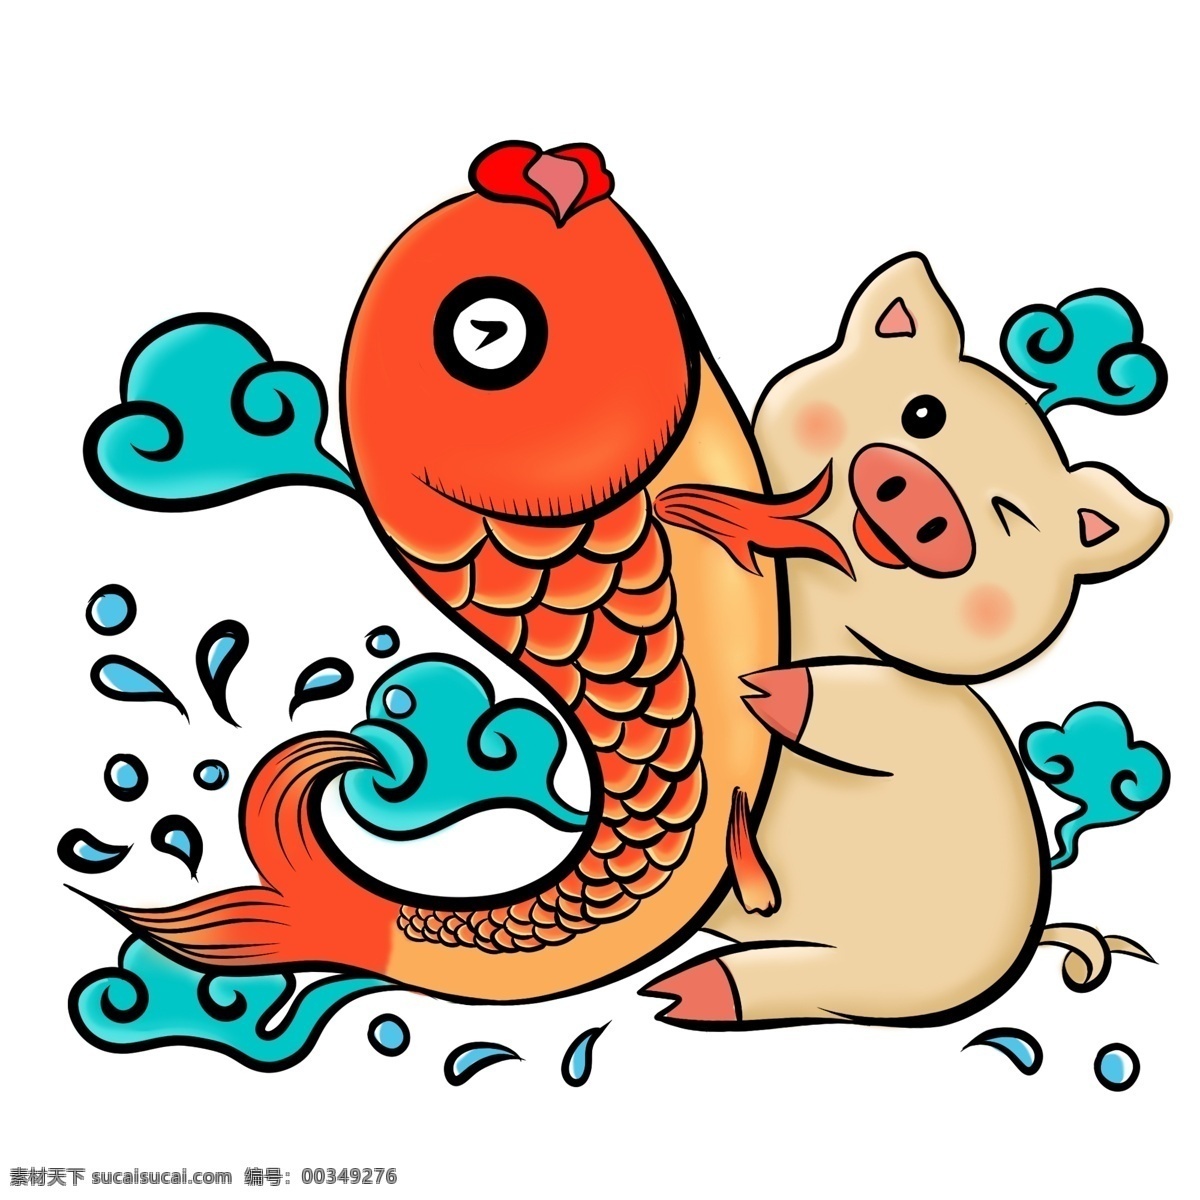 金 猪 抱 锦鲤 好玩 可爱 猪年 图案 金猪 水滴 跃出水面 搞怪 祥云 鱼 动物 卡通 手绘 抱抱 拥抱 哈哈笑